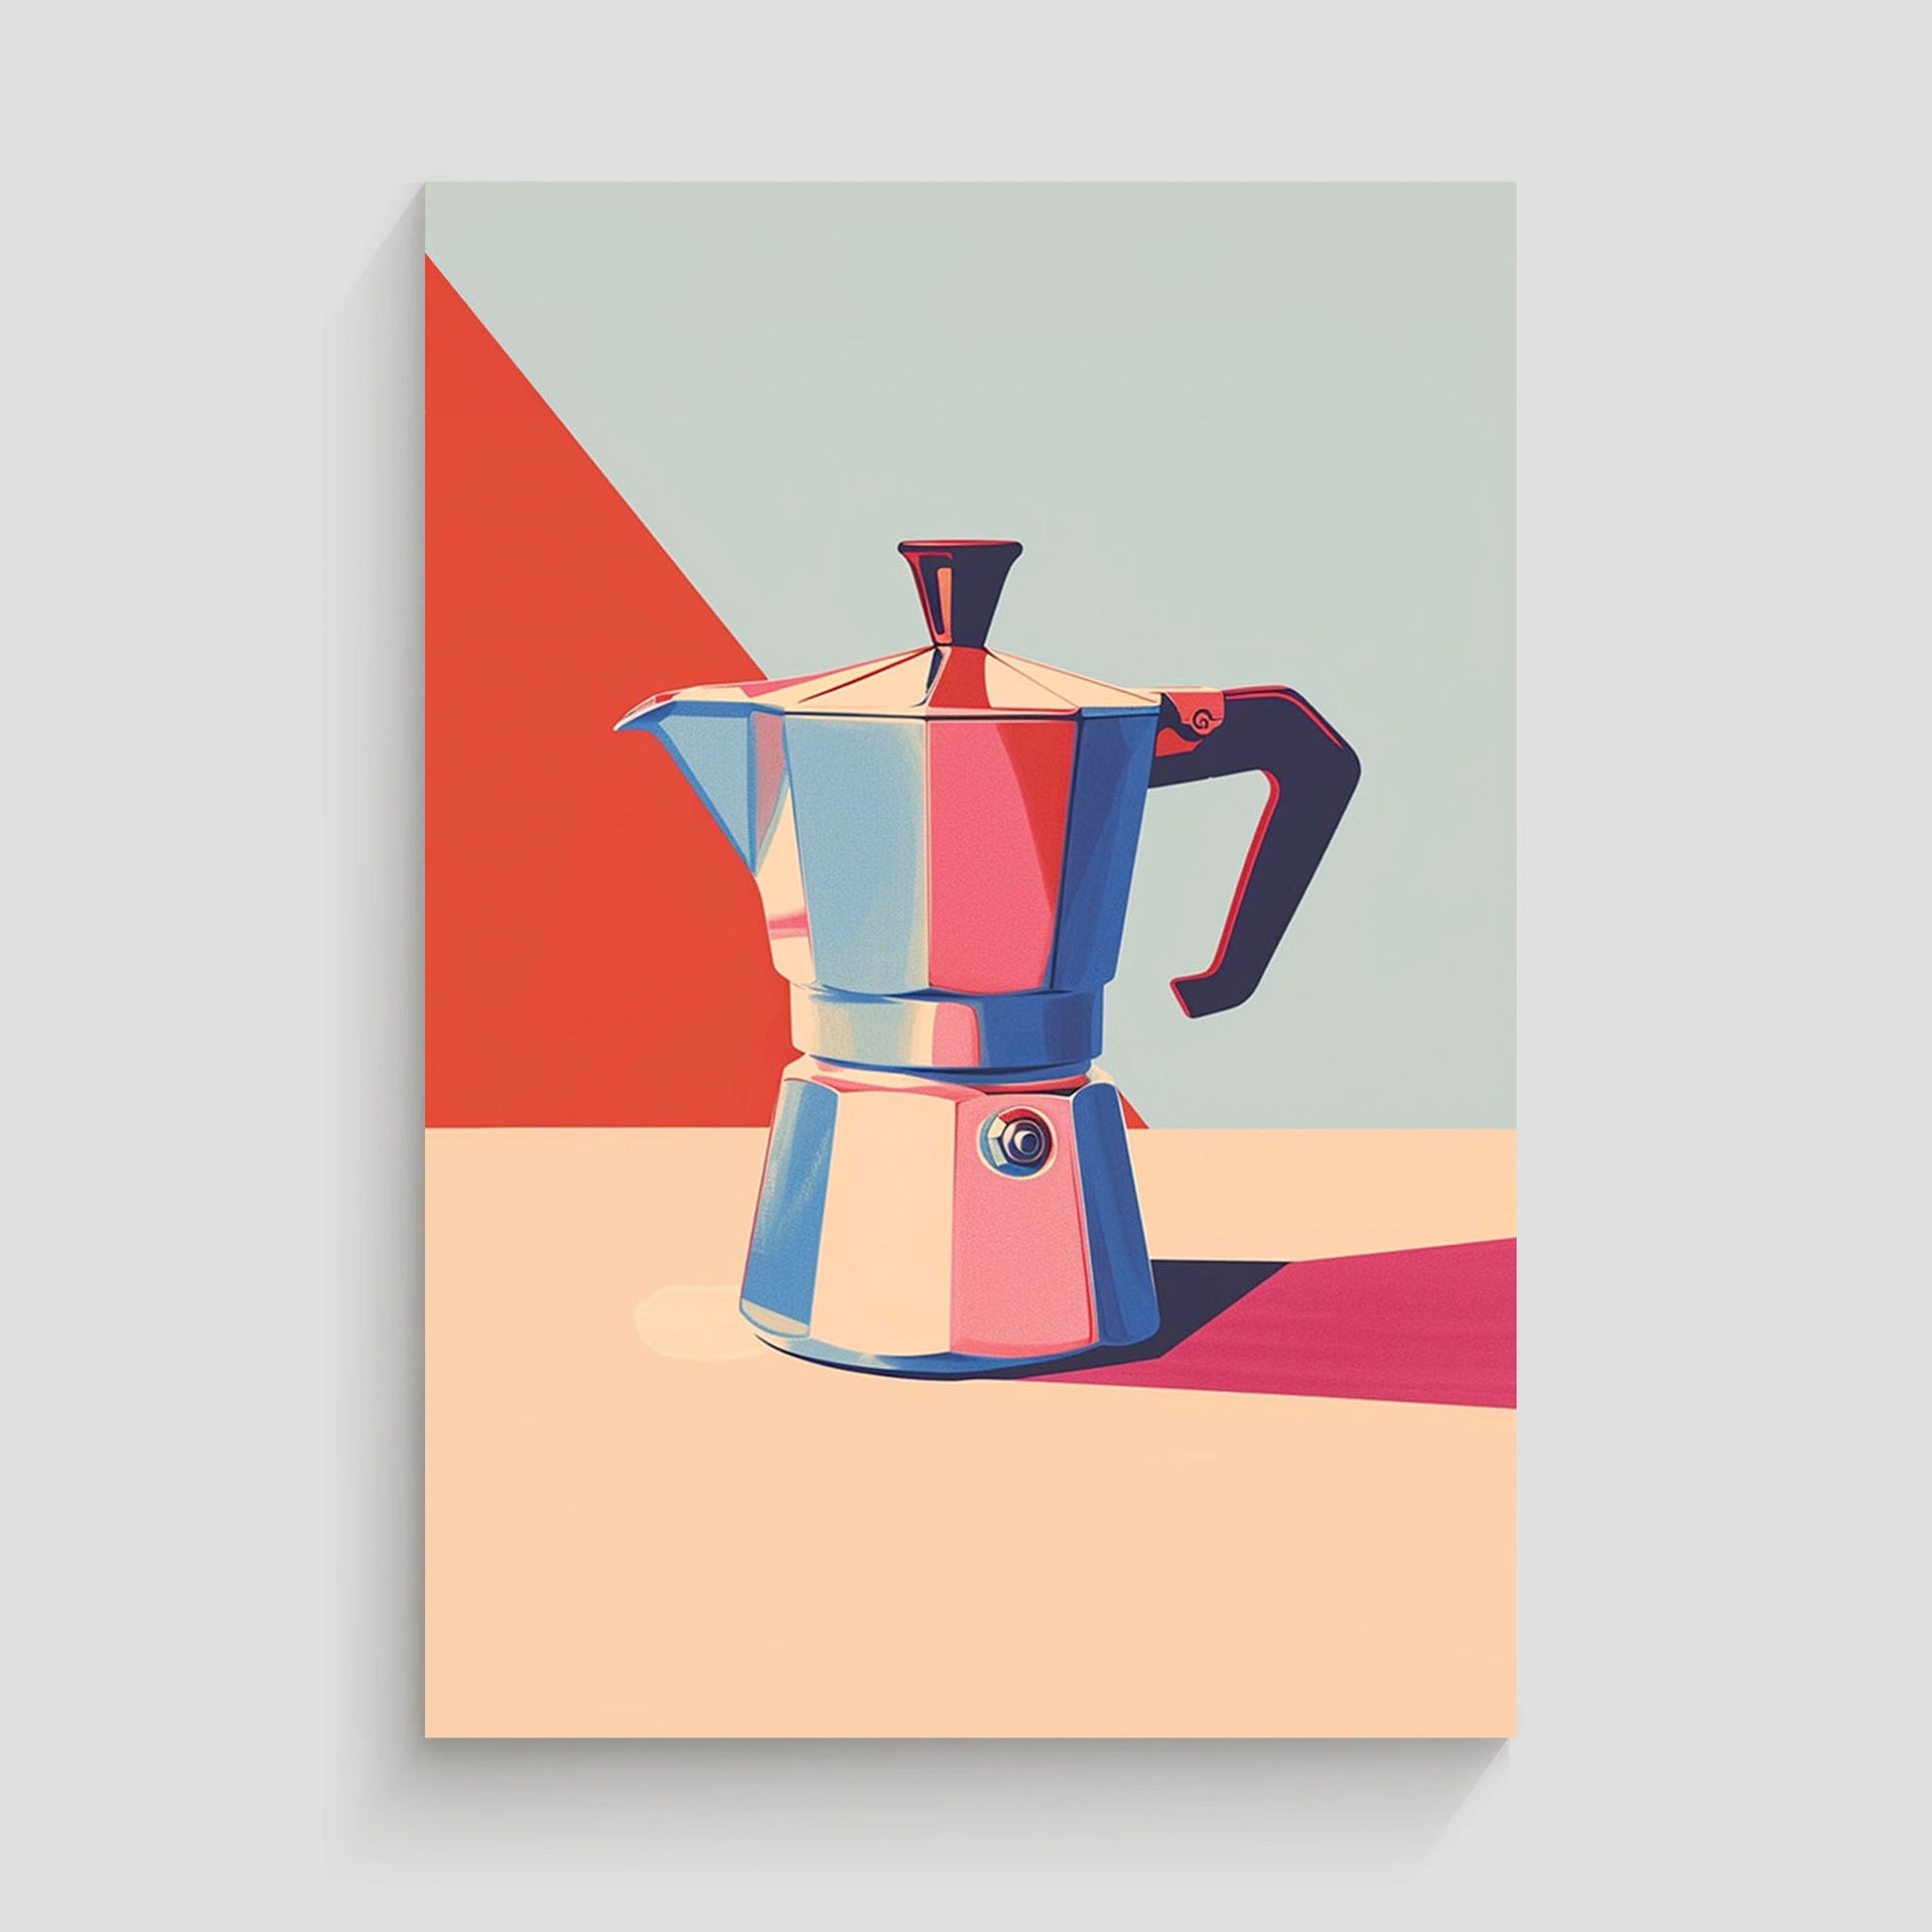 Ilustración vibrante de una cafetera italiana Moka en tonos brillantes de rojo, azul y beige